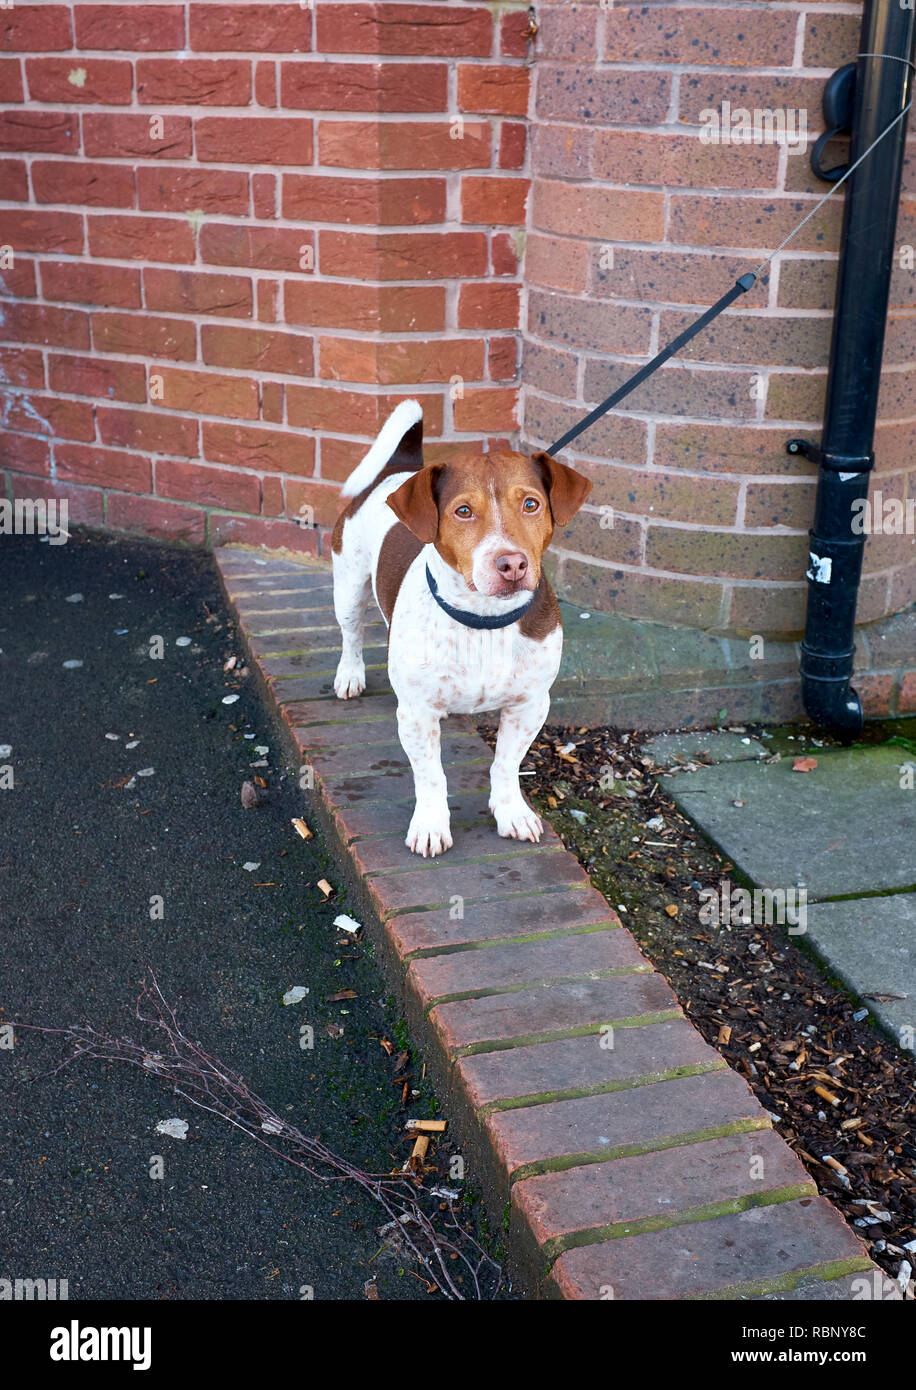 Ein Jack Russell Terrier stehend auf einer Reihe von Backsteinen, die Teil des Pflasters auf Eigene mit seinem führen zu einem fallrohr gebunden Stockfoto